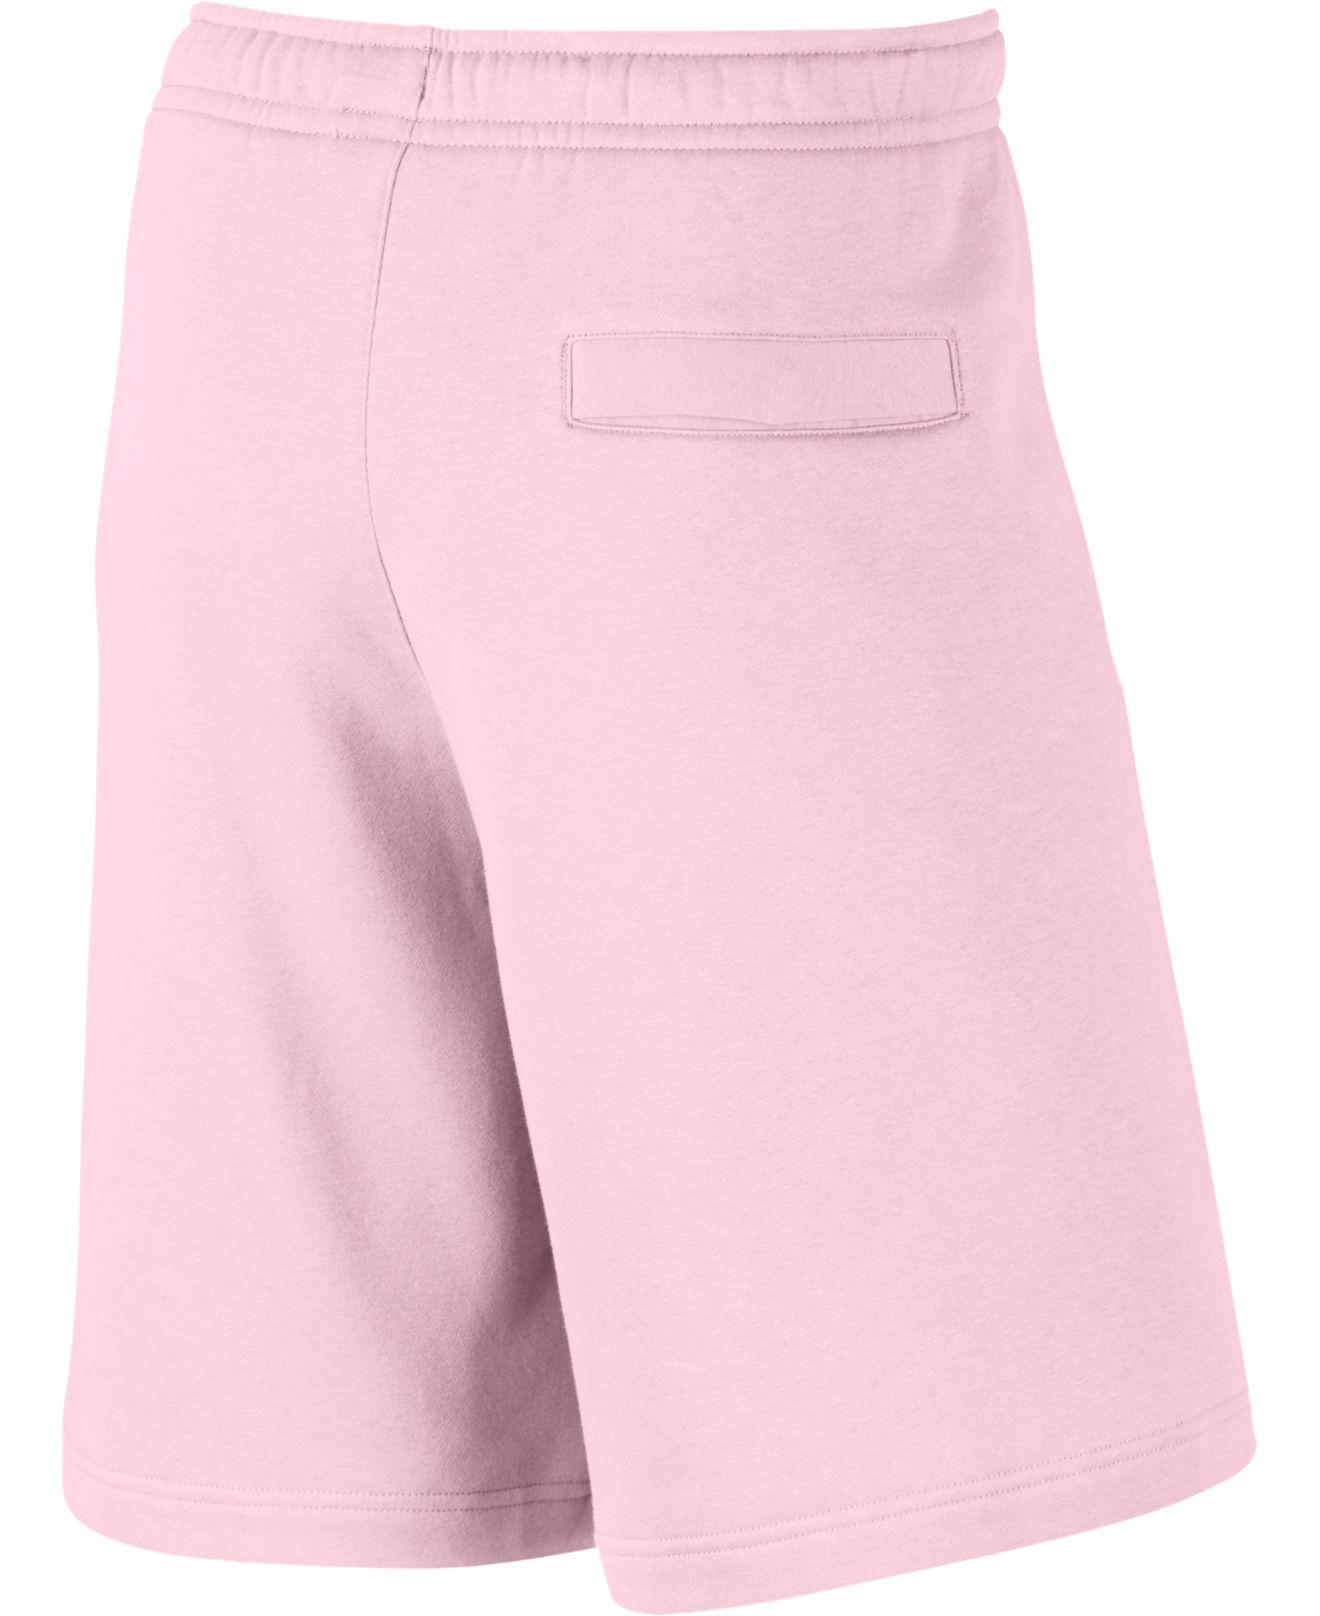 nike shorts pink mens